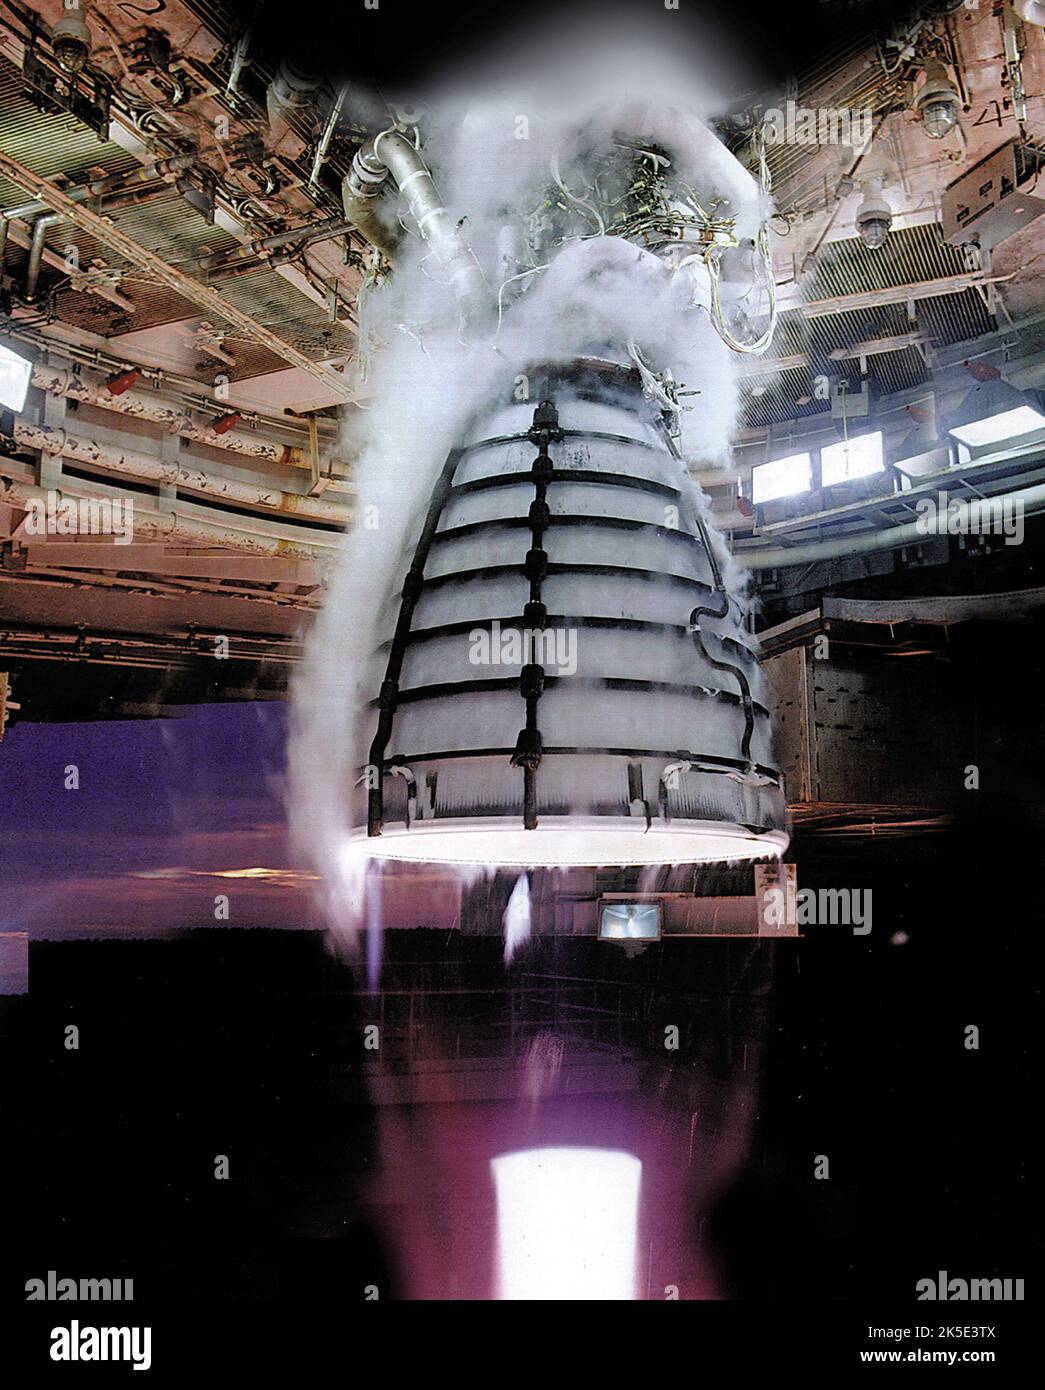 RS-25-Engine-Test für die Core Stage Engine des Space Launch Systems (SLS). Der RS-25-Motor, der das Space Shuttle erfolgreich angetrieben hat, wird für Amerikas nächste große Rakete, das Space Launch System (SLS), modifiziert. Die Heißbrandtests für den Motor begannen Anfang 2015. Optimierte Version eines Originalbildes der NASA. Quelle: NASA/Stennis Stockfoto